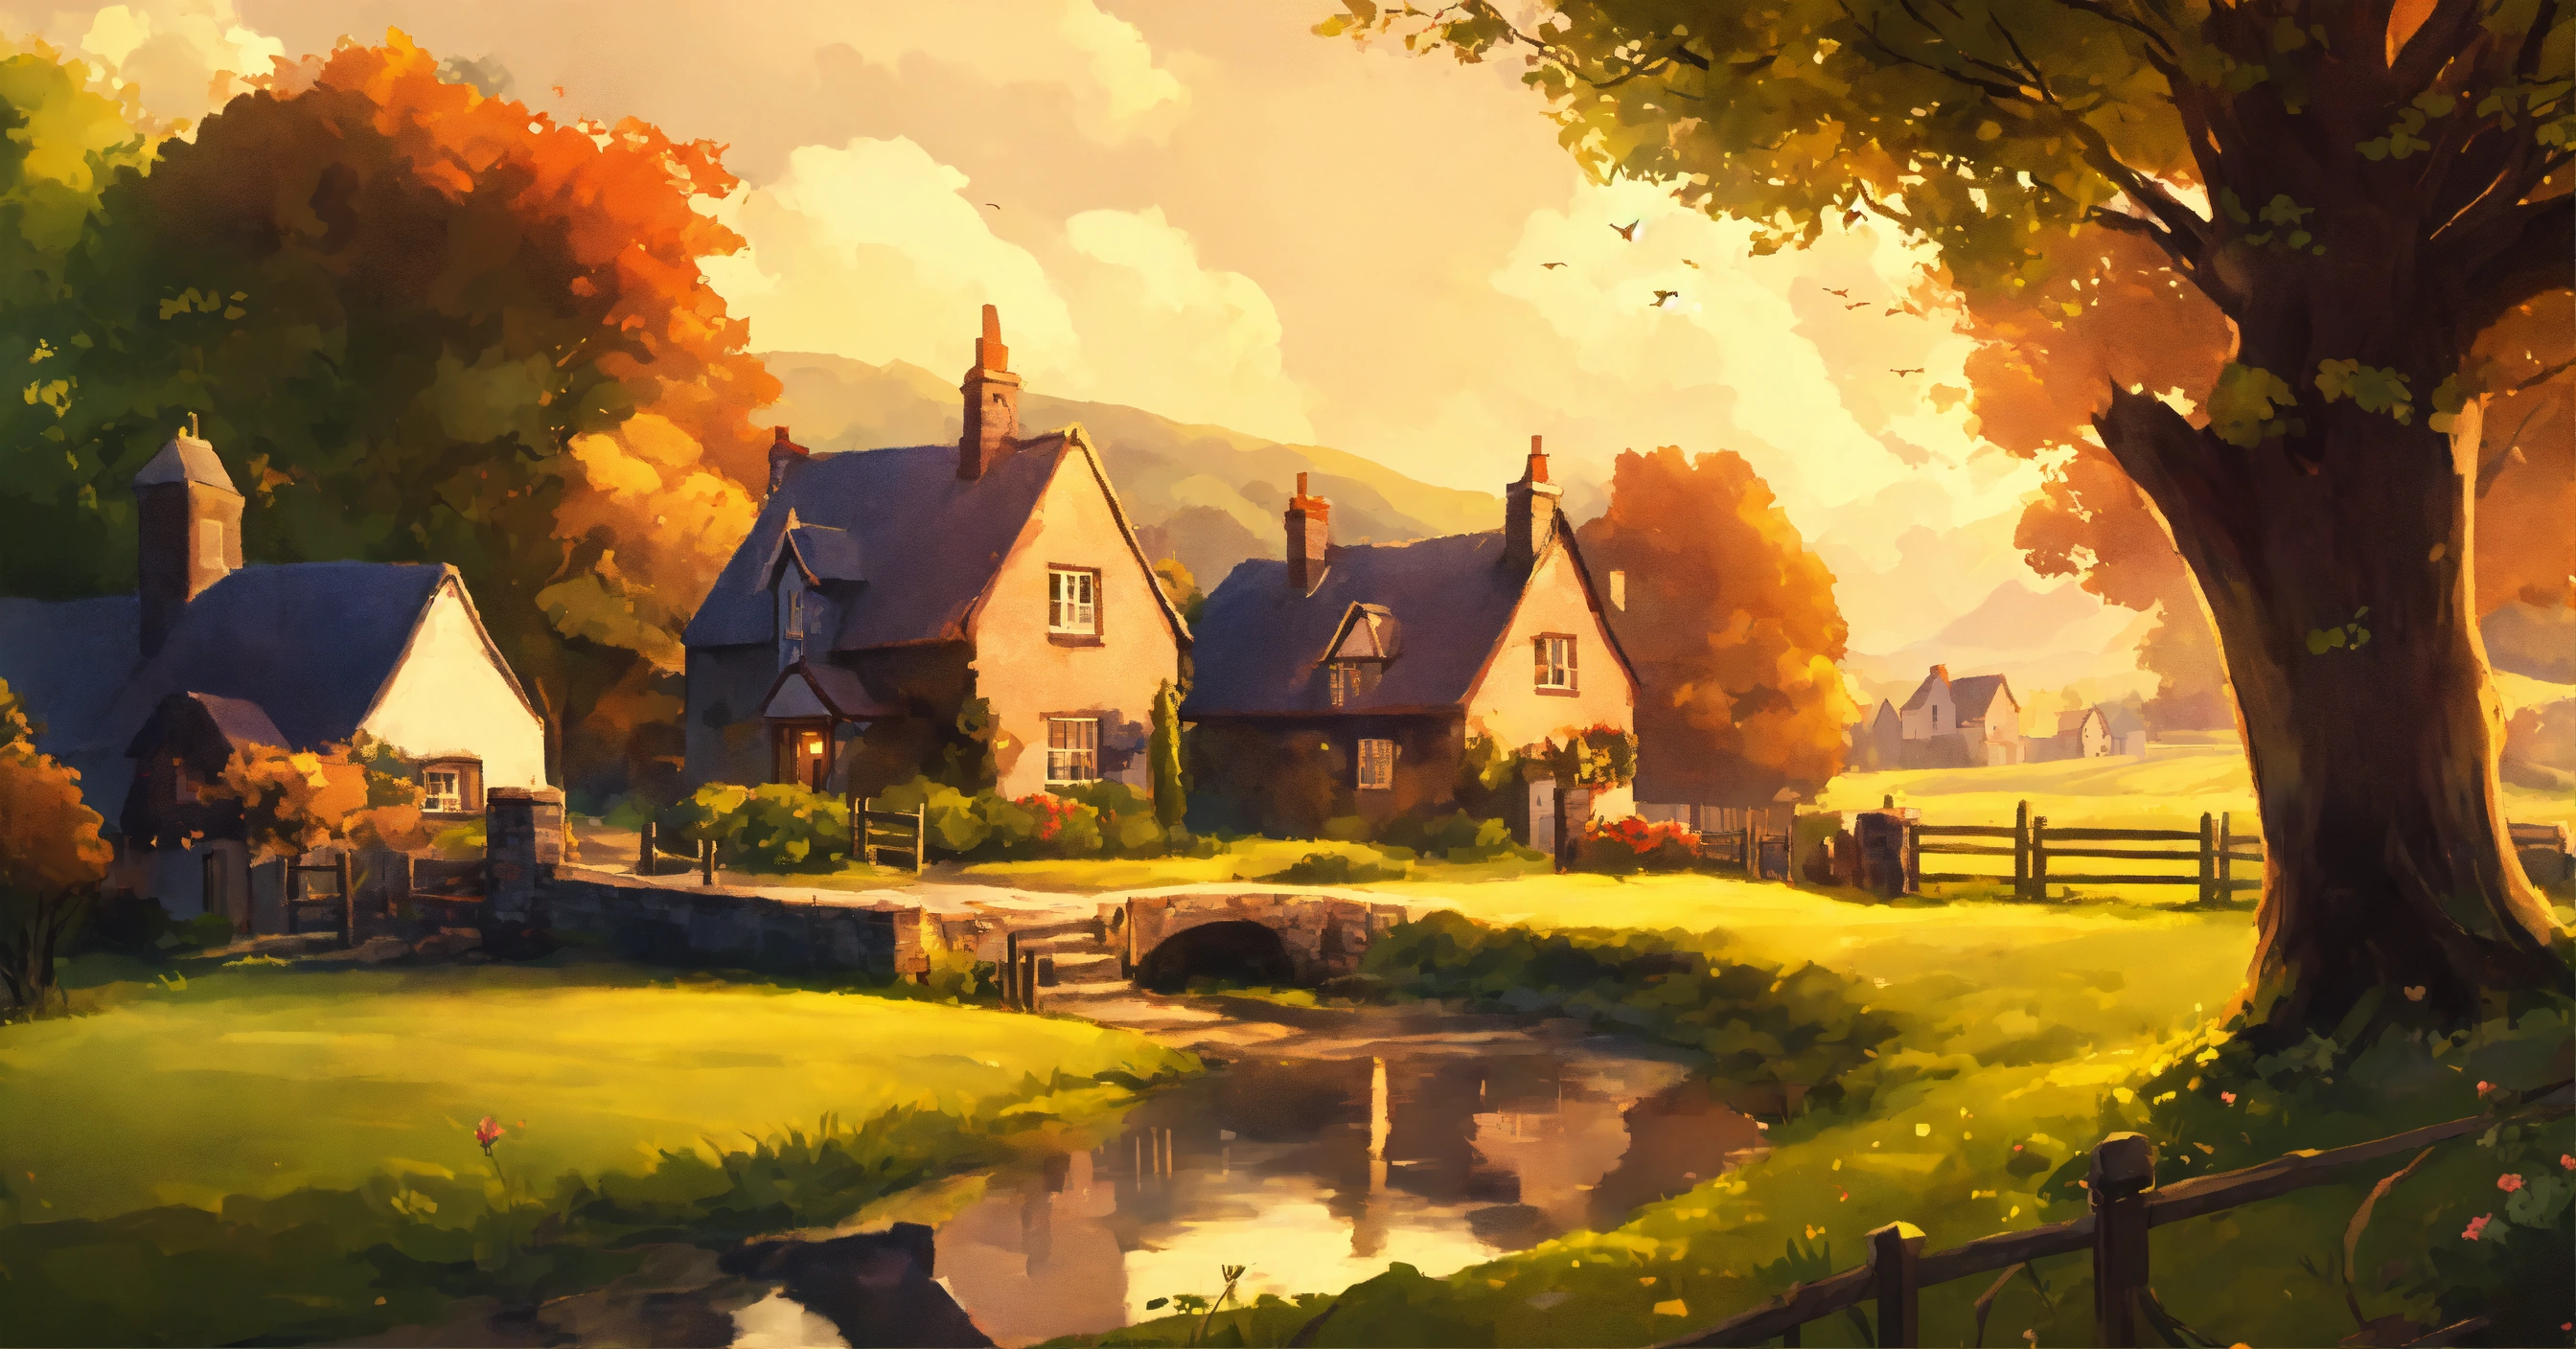 Пейзажные обои для рабочего стола с изображением красивой английской деревенской деревни в стиле иллюстратора Дональда Золана